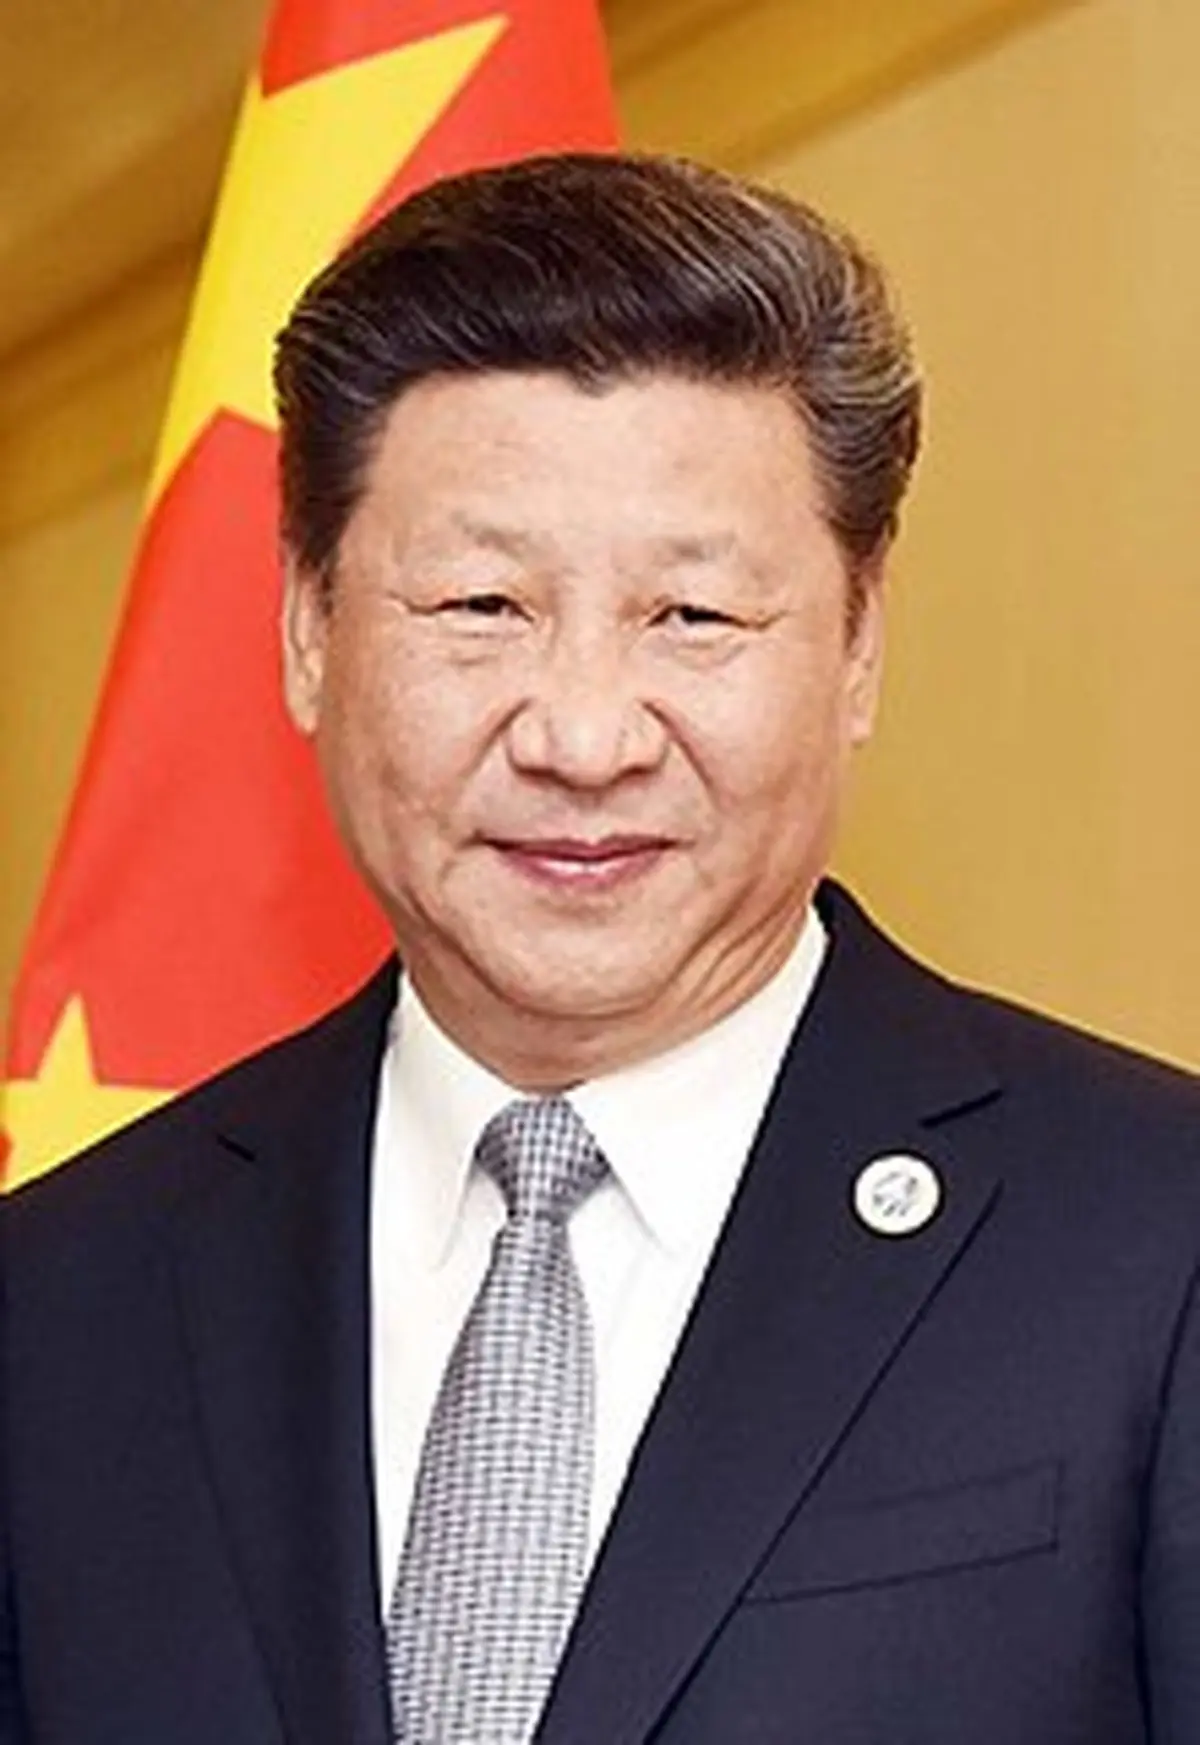 شباهت ترسناک رئیس جمهور چین به شخصیت فیلم معروف وینی پو! | این فیلم در هنگ کنگ ممنوع شد + عکس